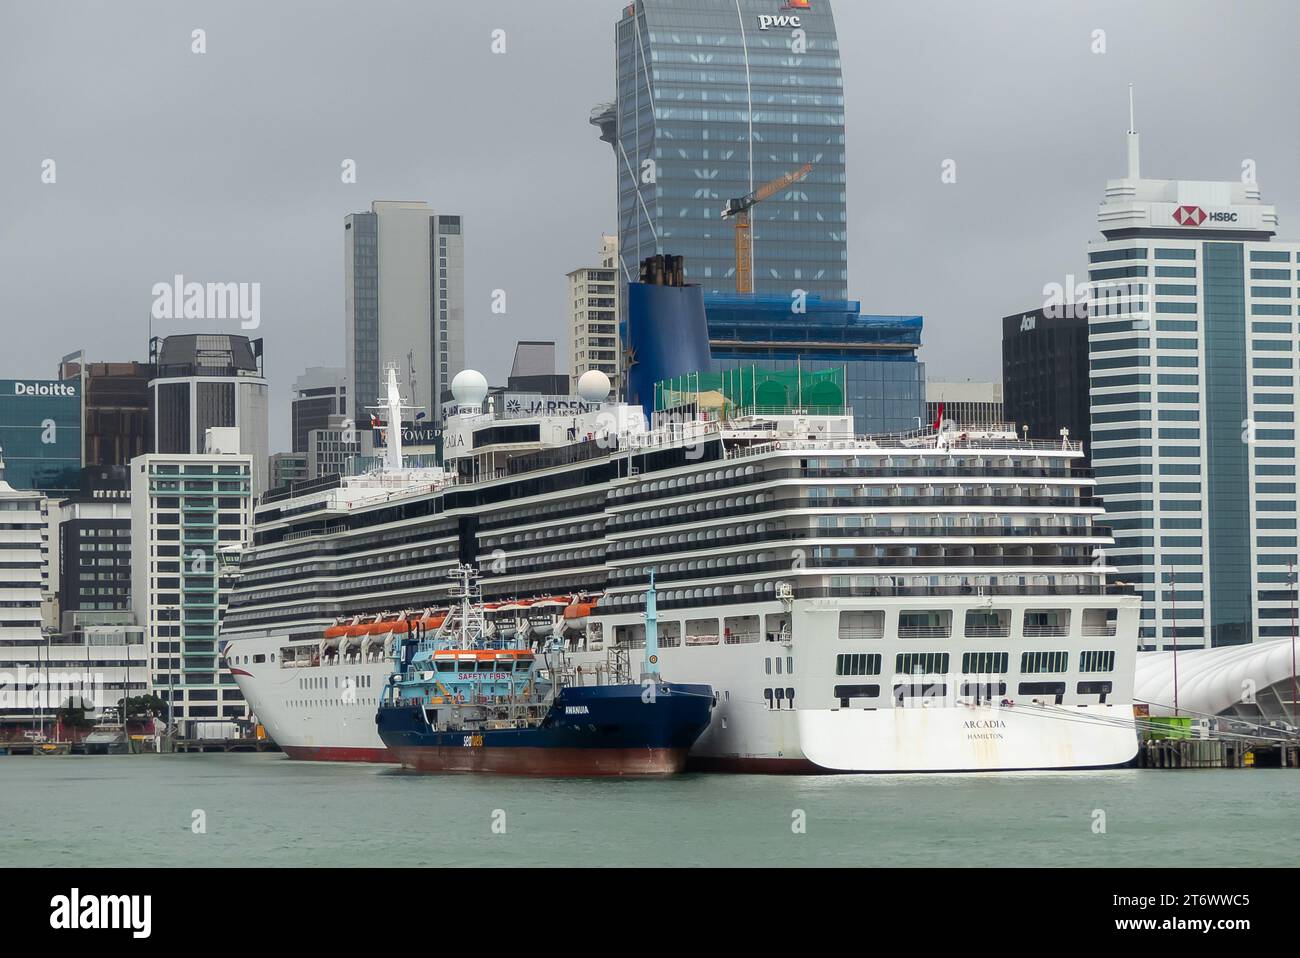 Le navire de croisière P & O 'Arcadia' ravitaillant dans le port d'Auckland, en Nouvelle-Zélande Banque D'Images